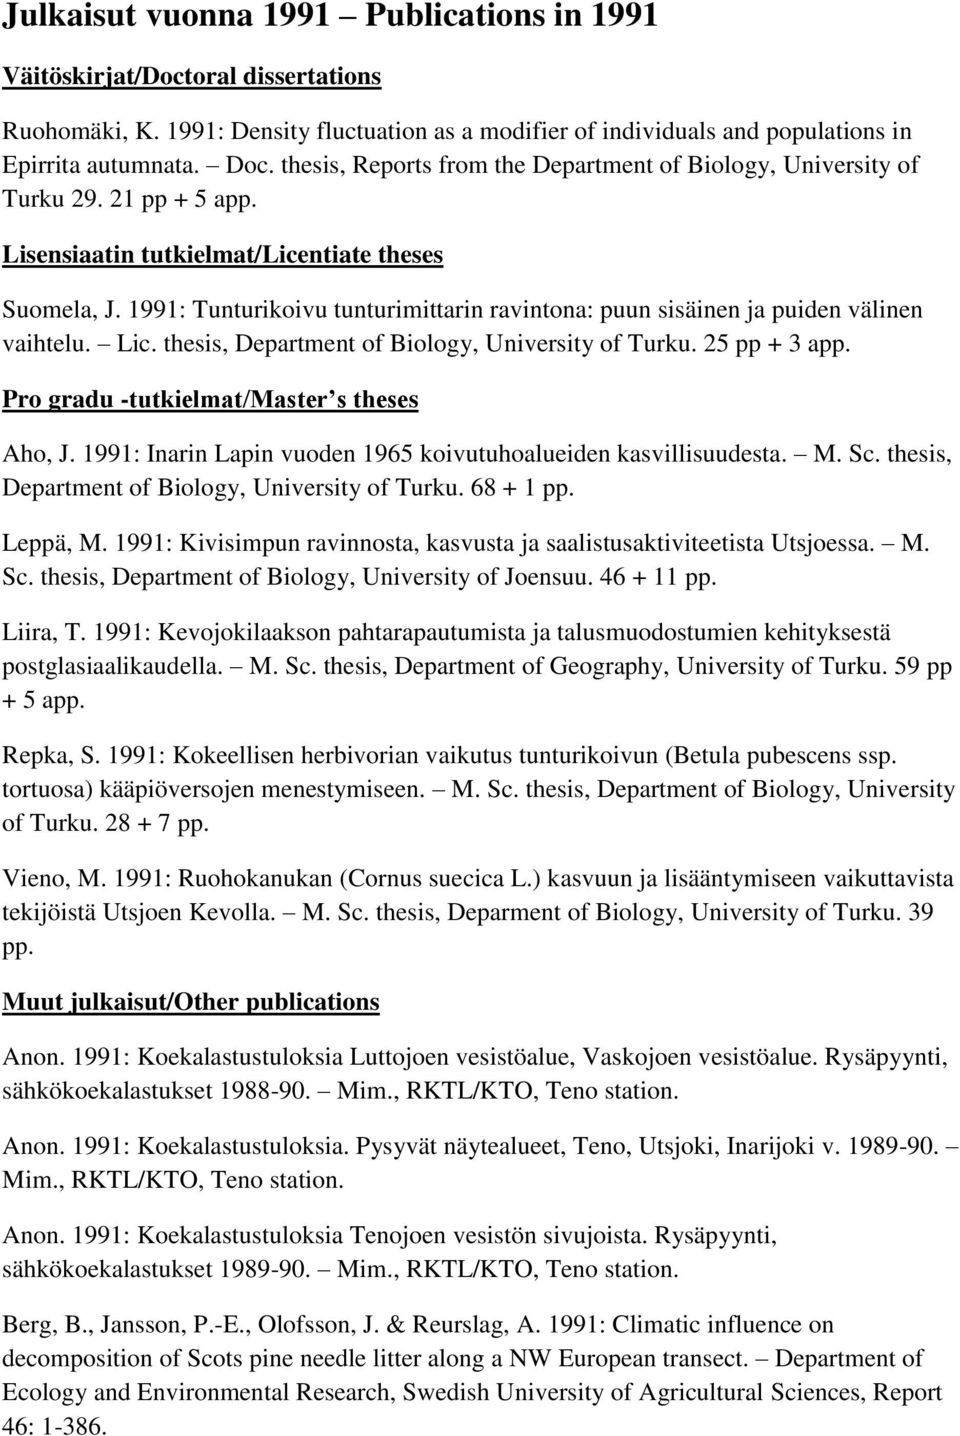 1991: Tunturikoivu tunturimittarin ravintona: puun sisäinen ja puiden välinen vaihtelu. Lic. thesis, Department of Biology, University of Turku. 25 pp + 3 app.